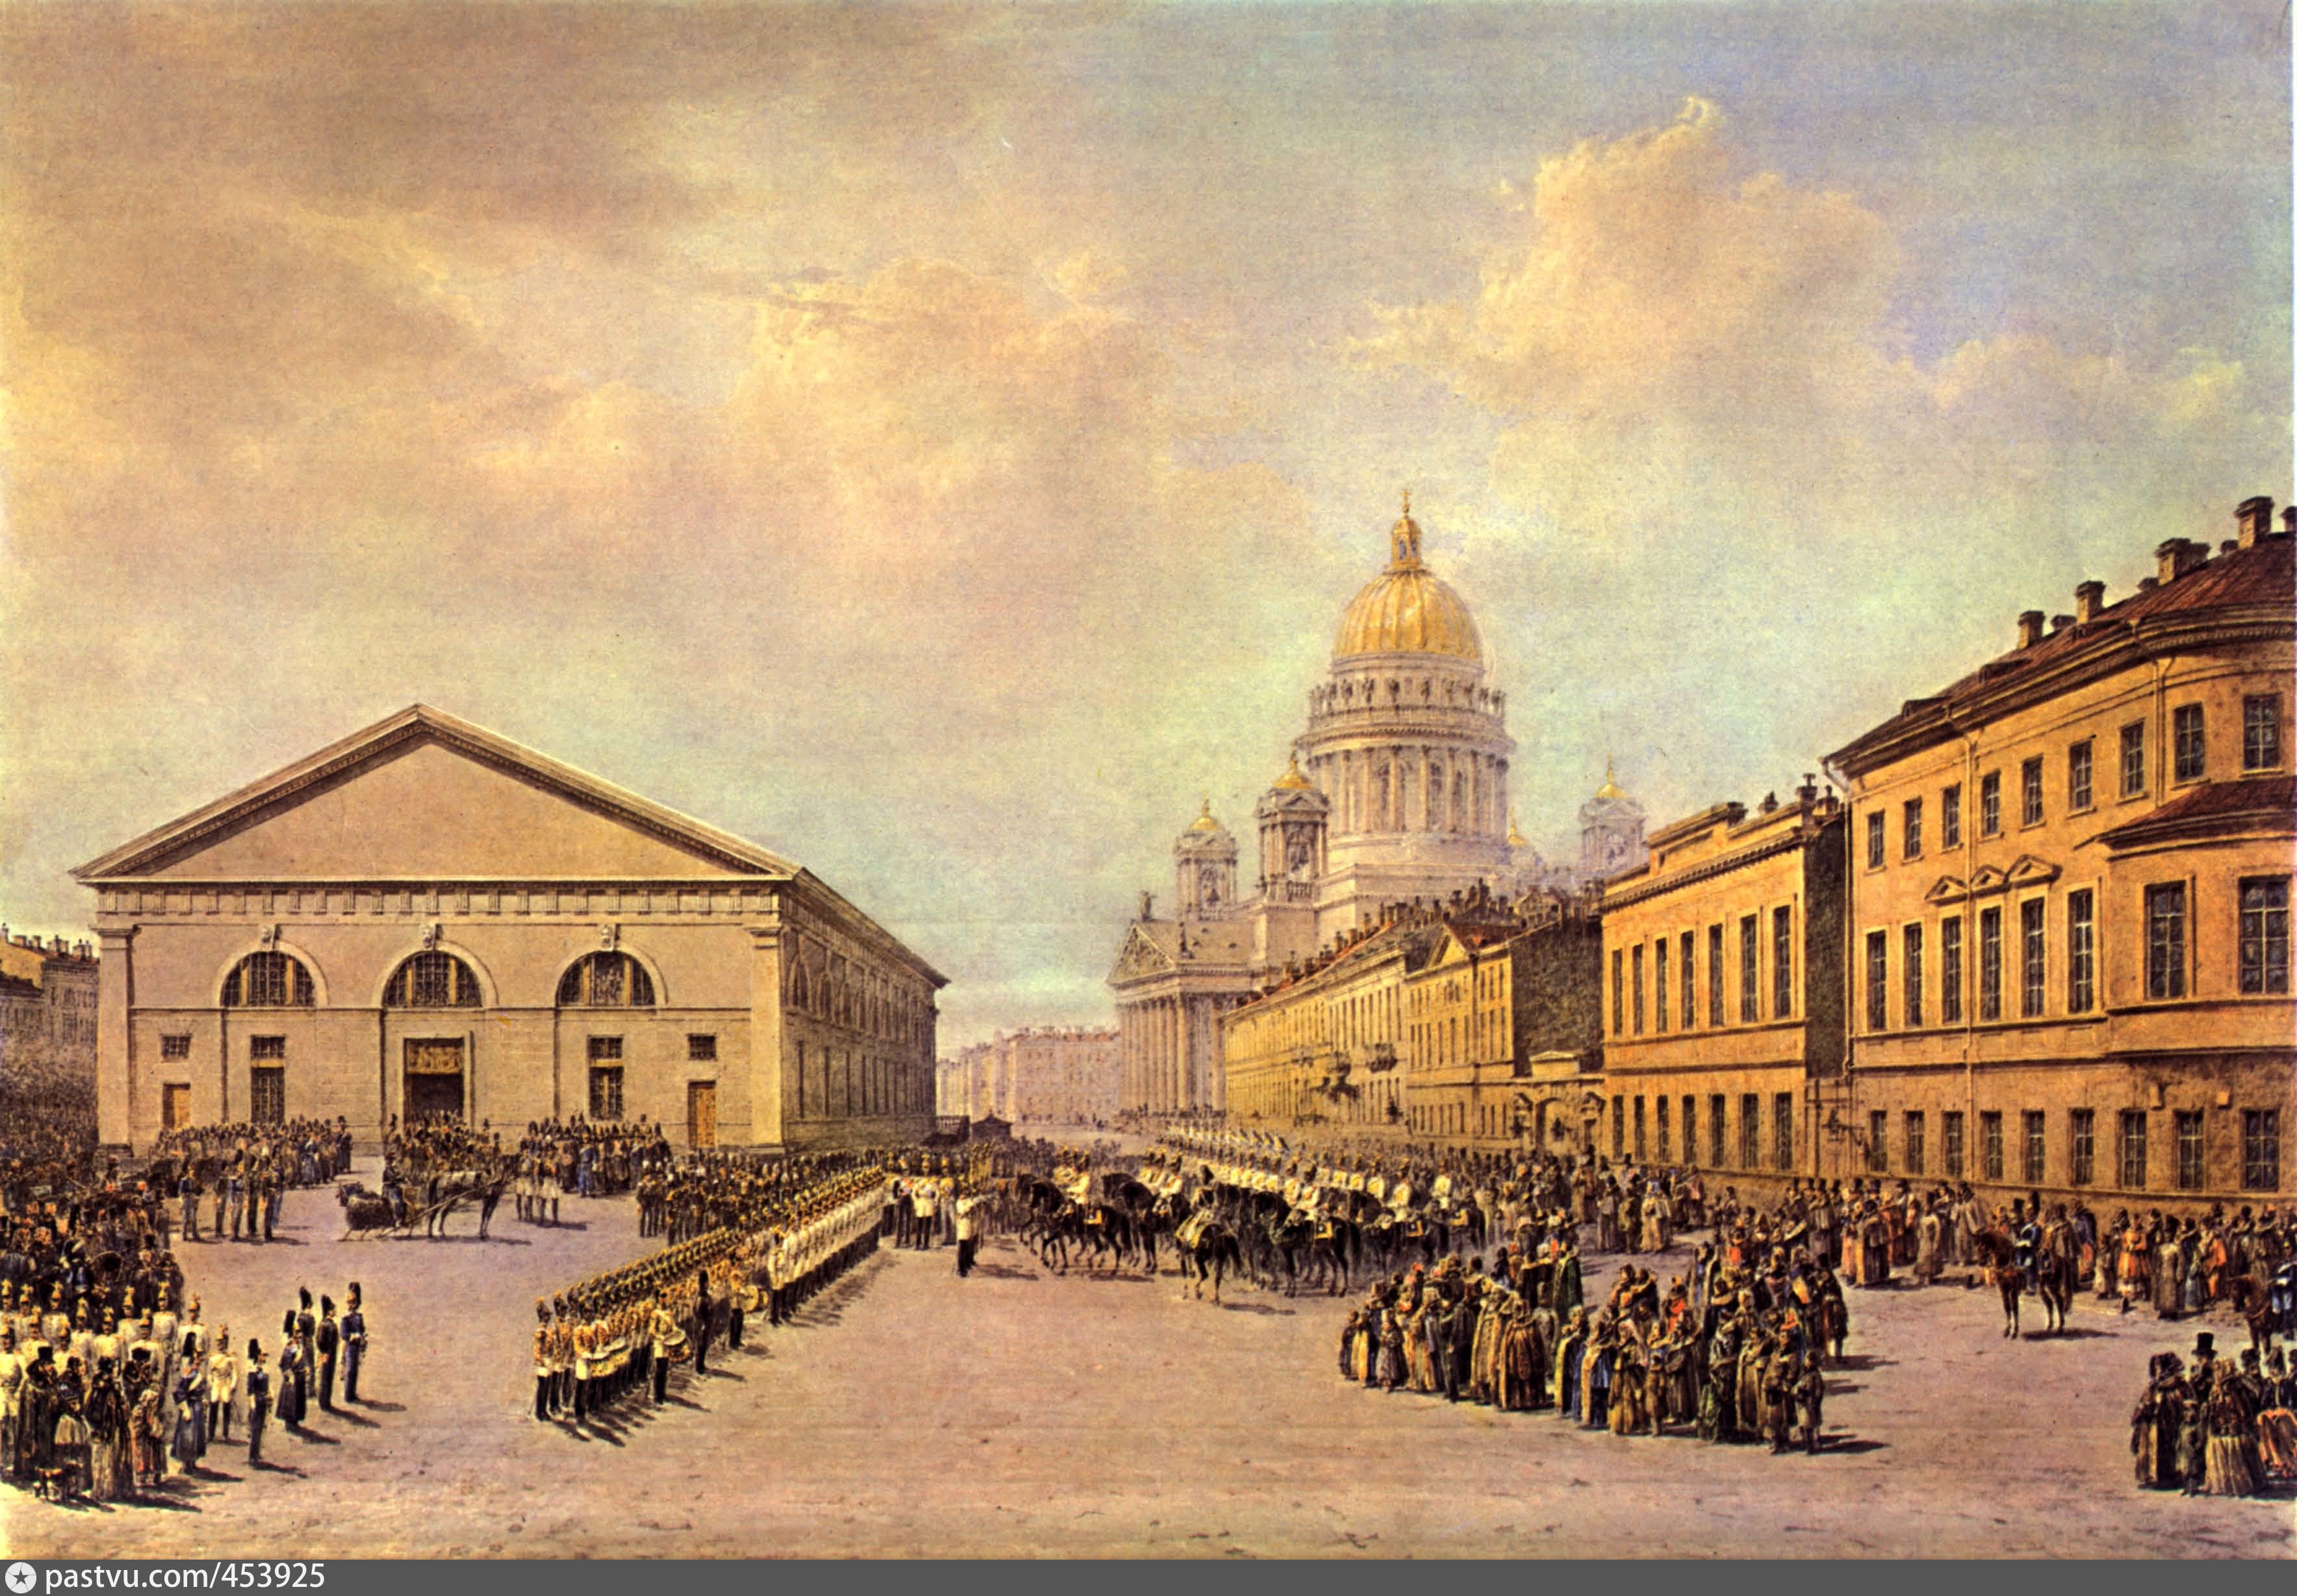 Конногвардейский манеж в Санкт-Петербурге 19 век